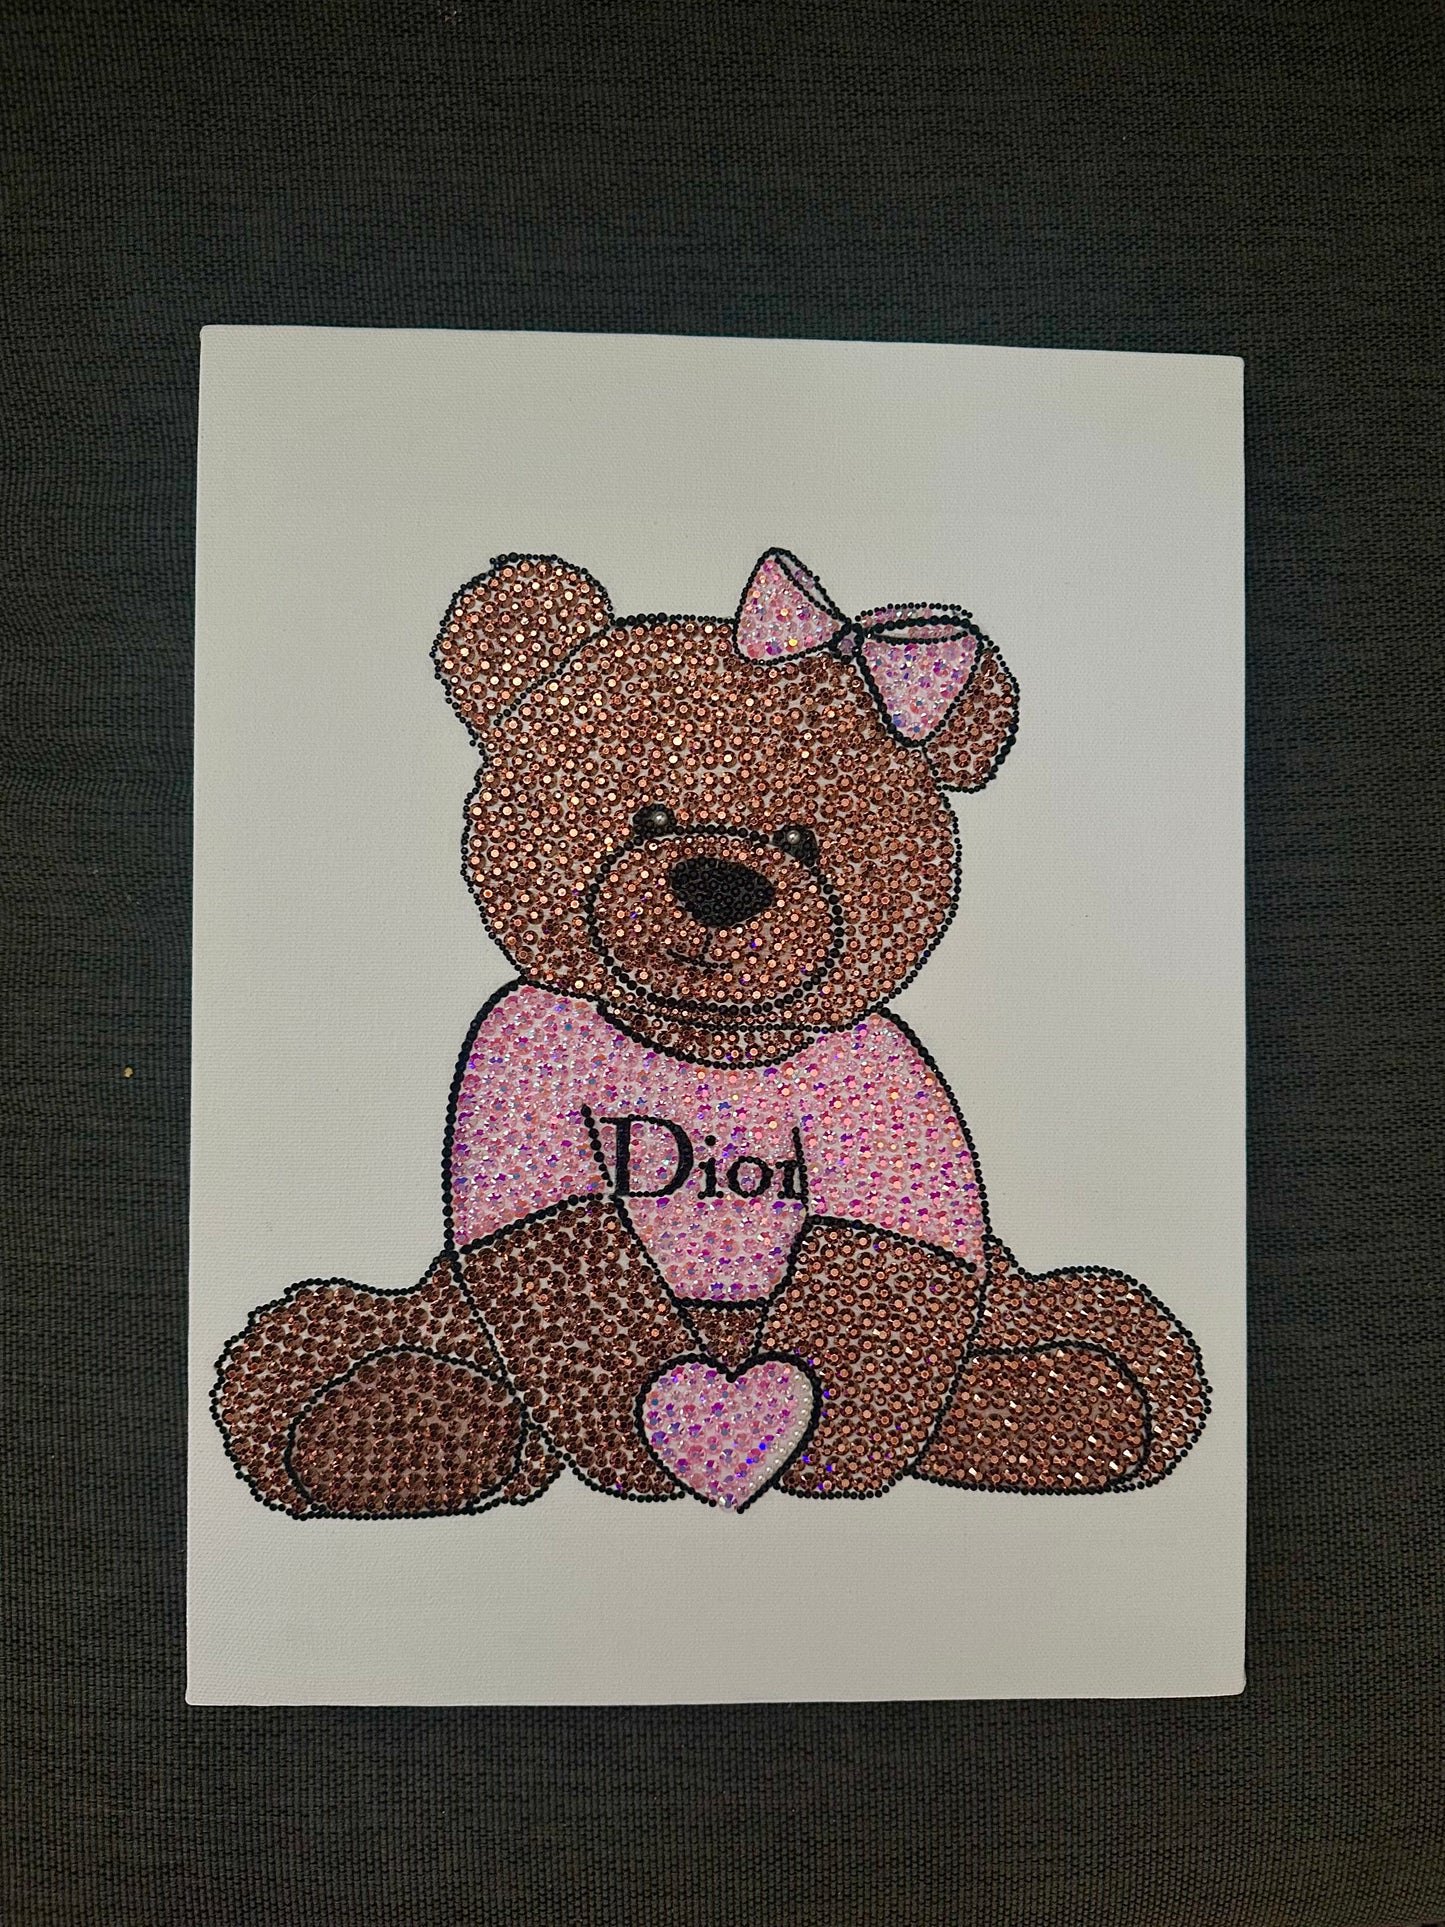 Dior teddy bear kit